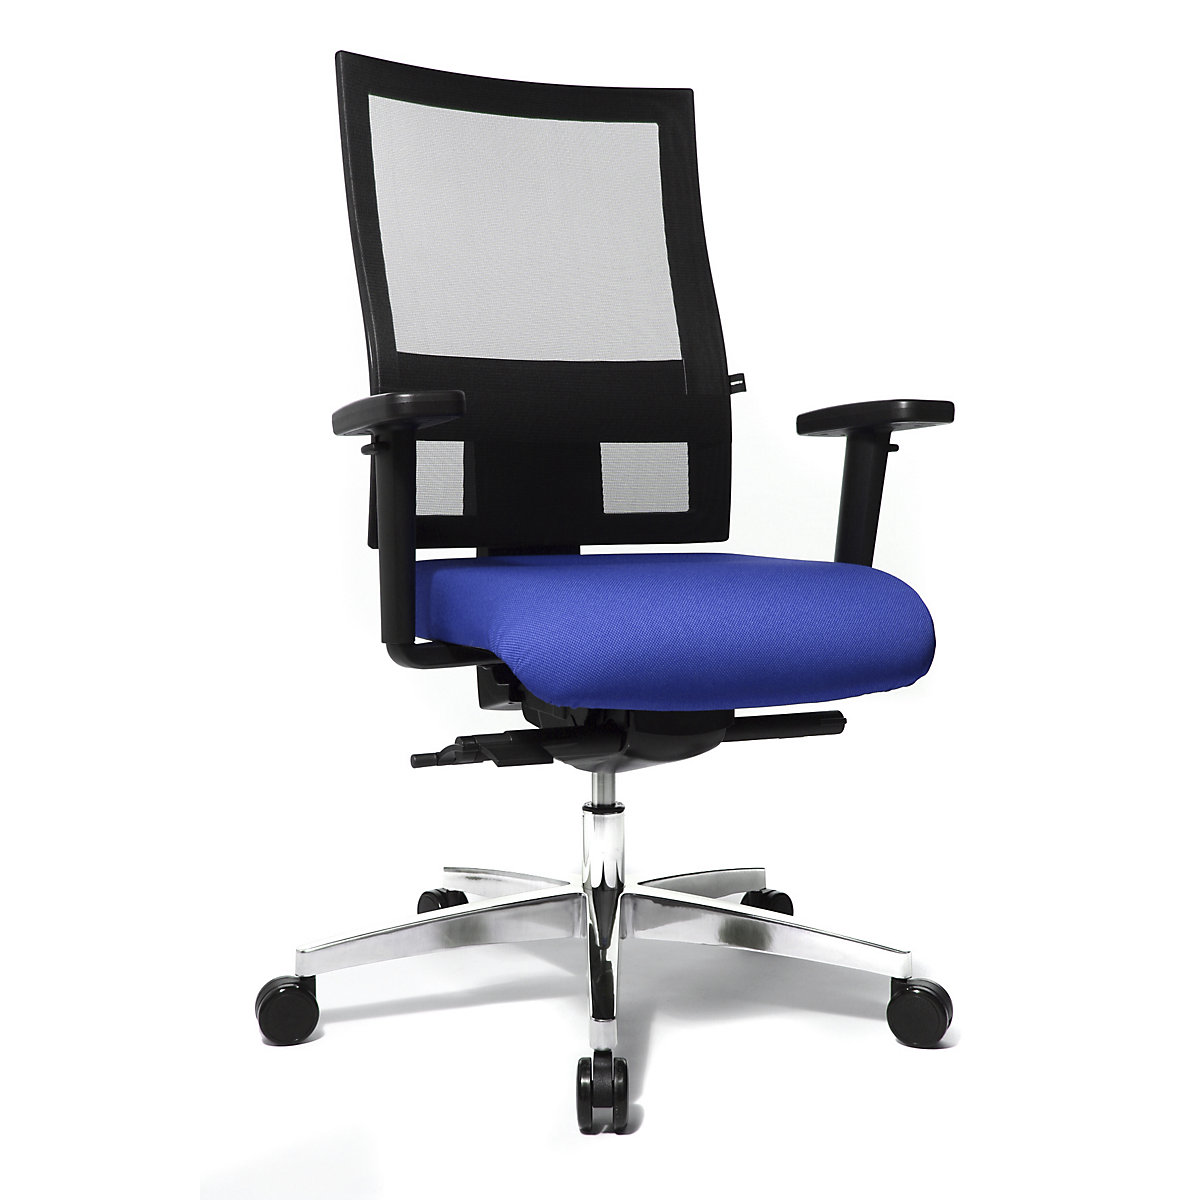 Cadeira giratória de escritório SITNESS 60 – Topstar, com encosto de respiração ativa, apoios para braços incluídos, azul/preto-4